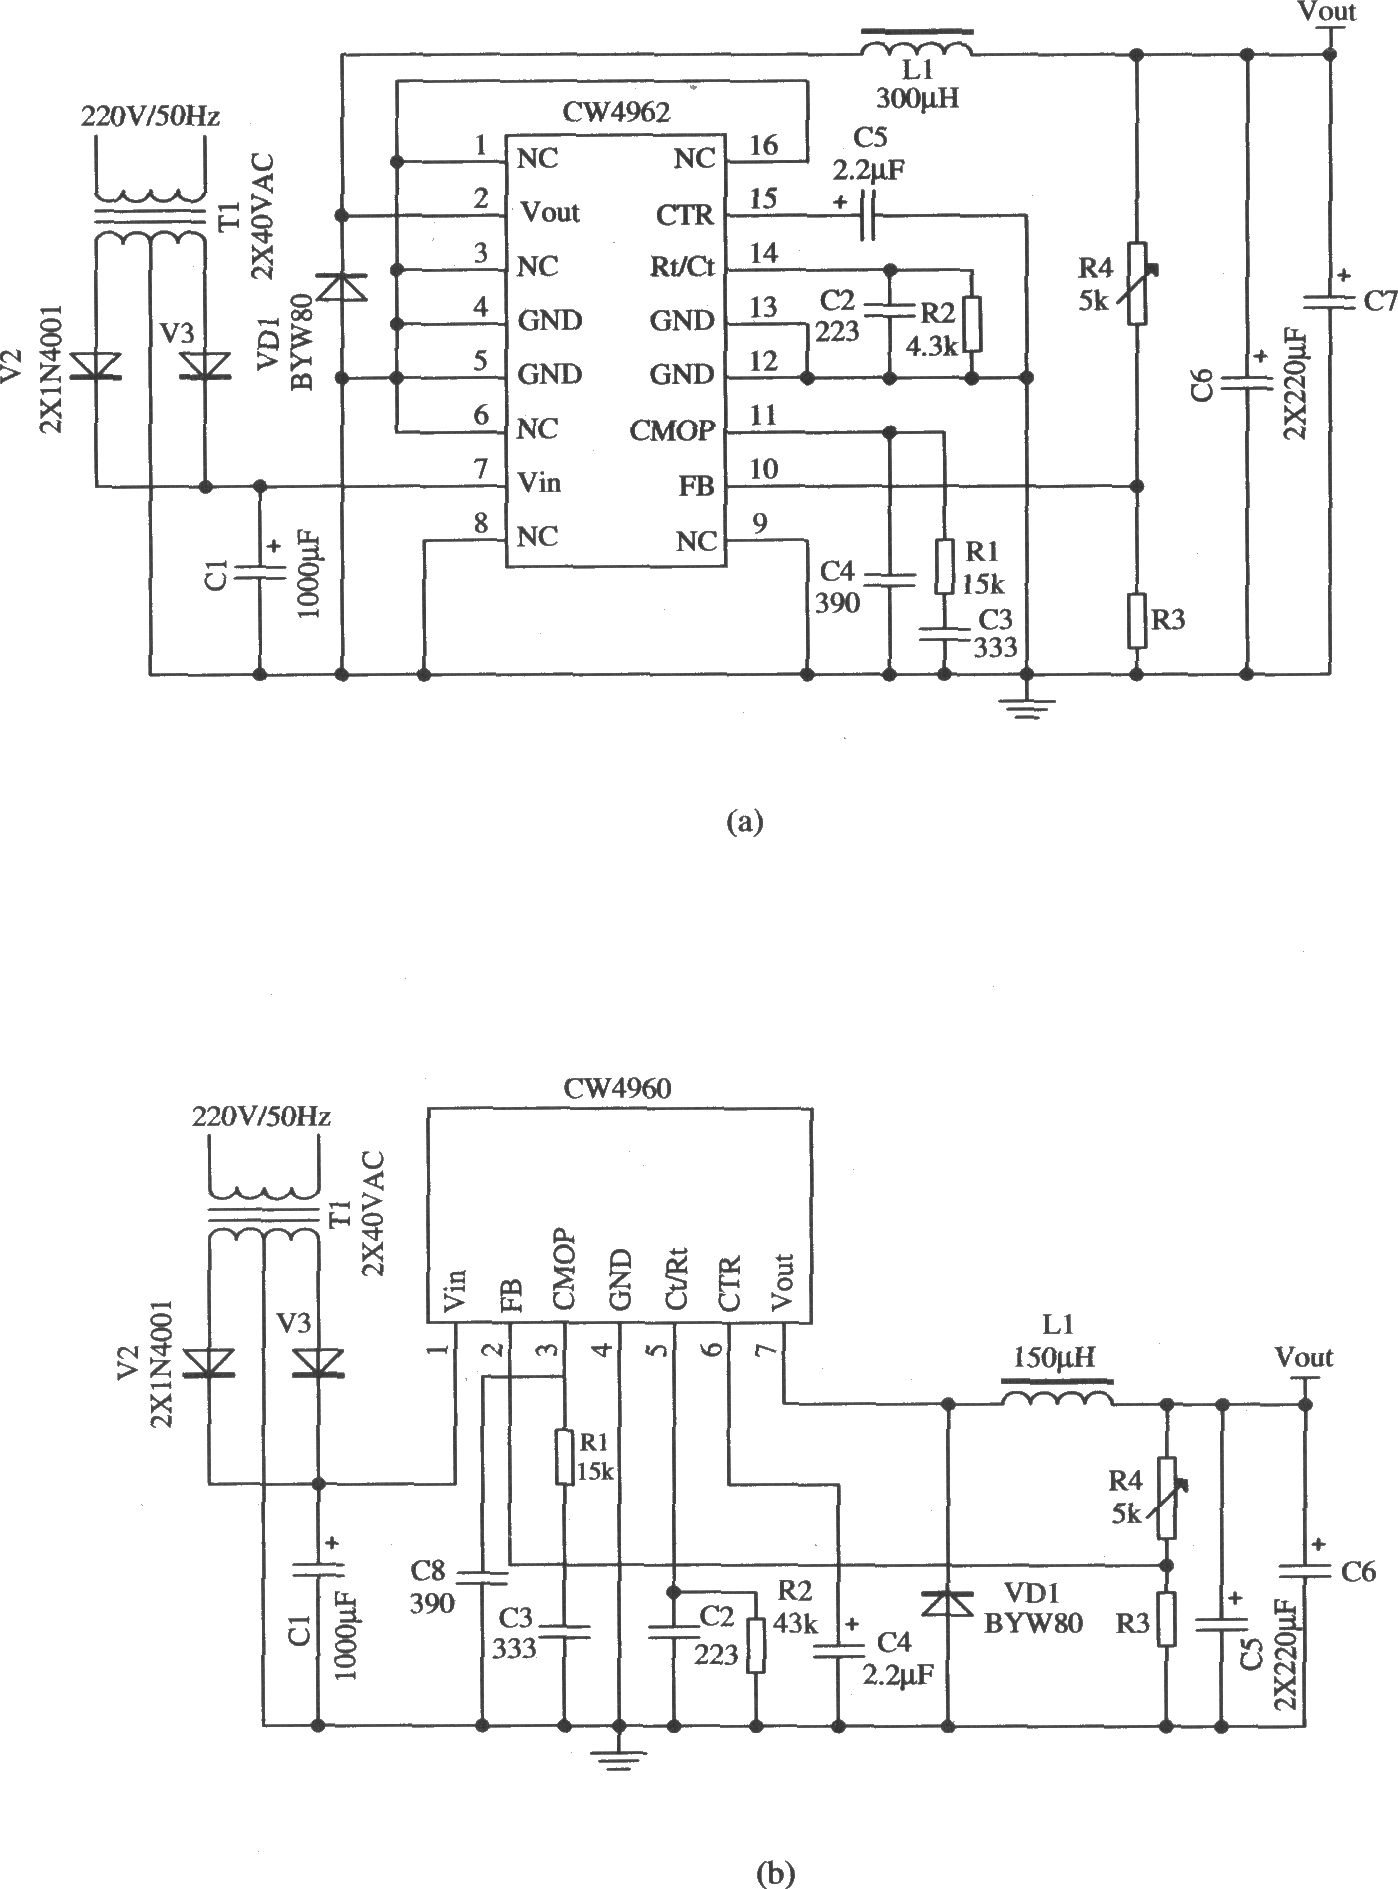 工频变压器对交流220V电网电压降压、整流、滤波后作为前级输入电